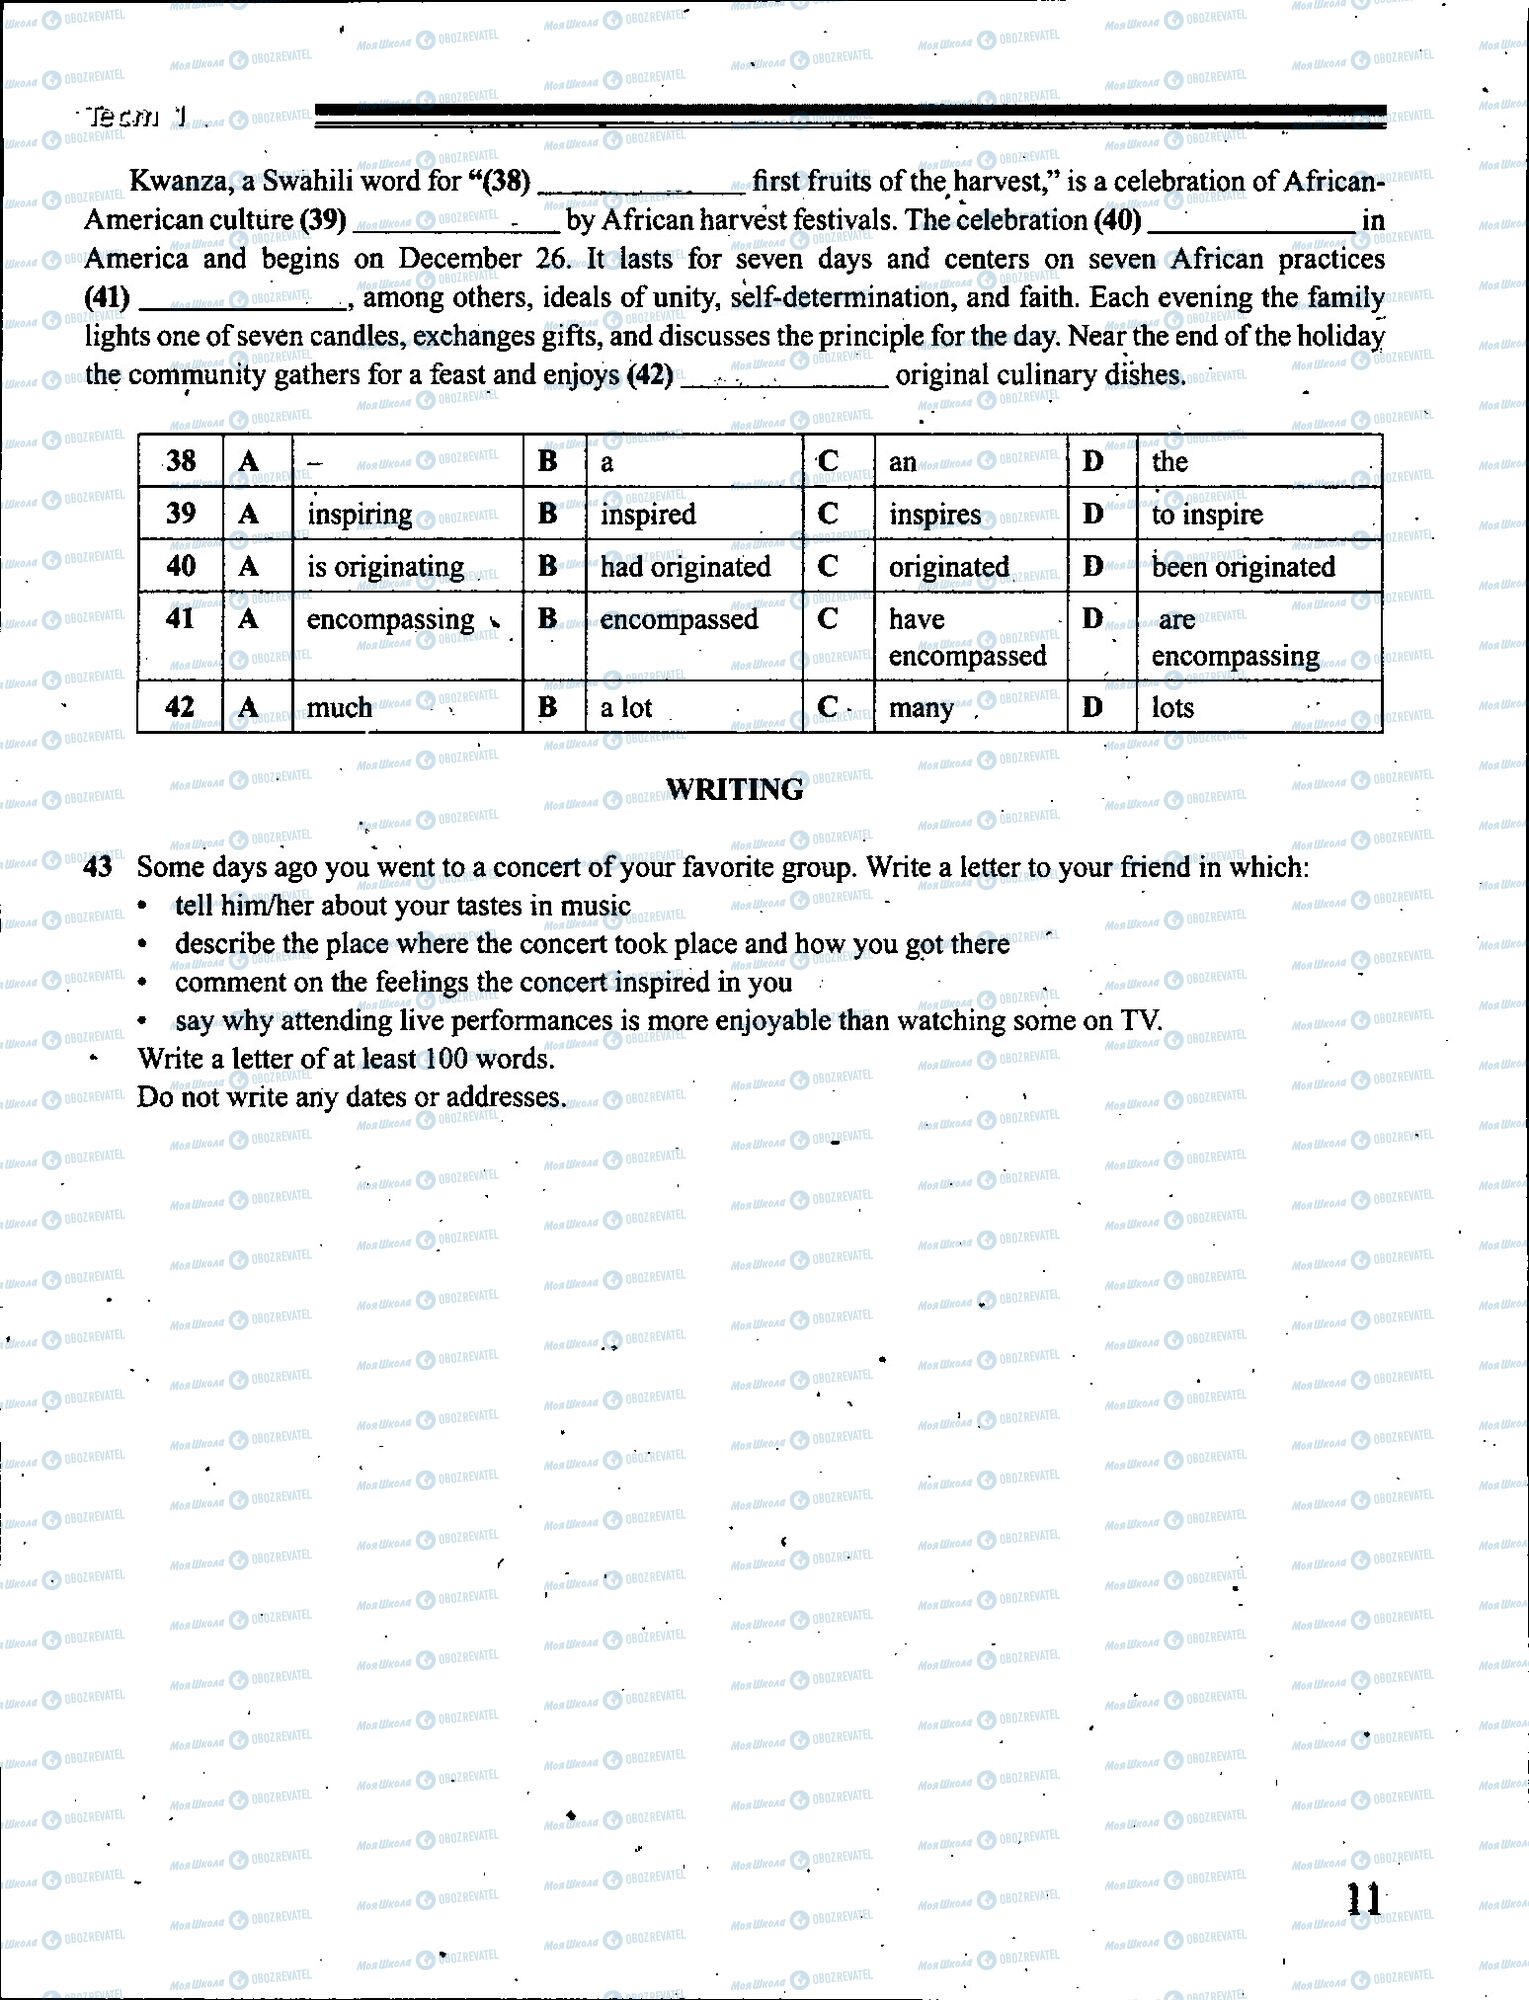 ЗНО Английский язык 11 класс страница 011